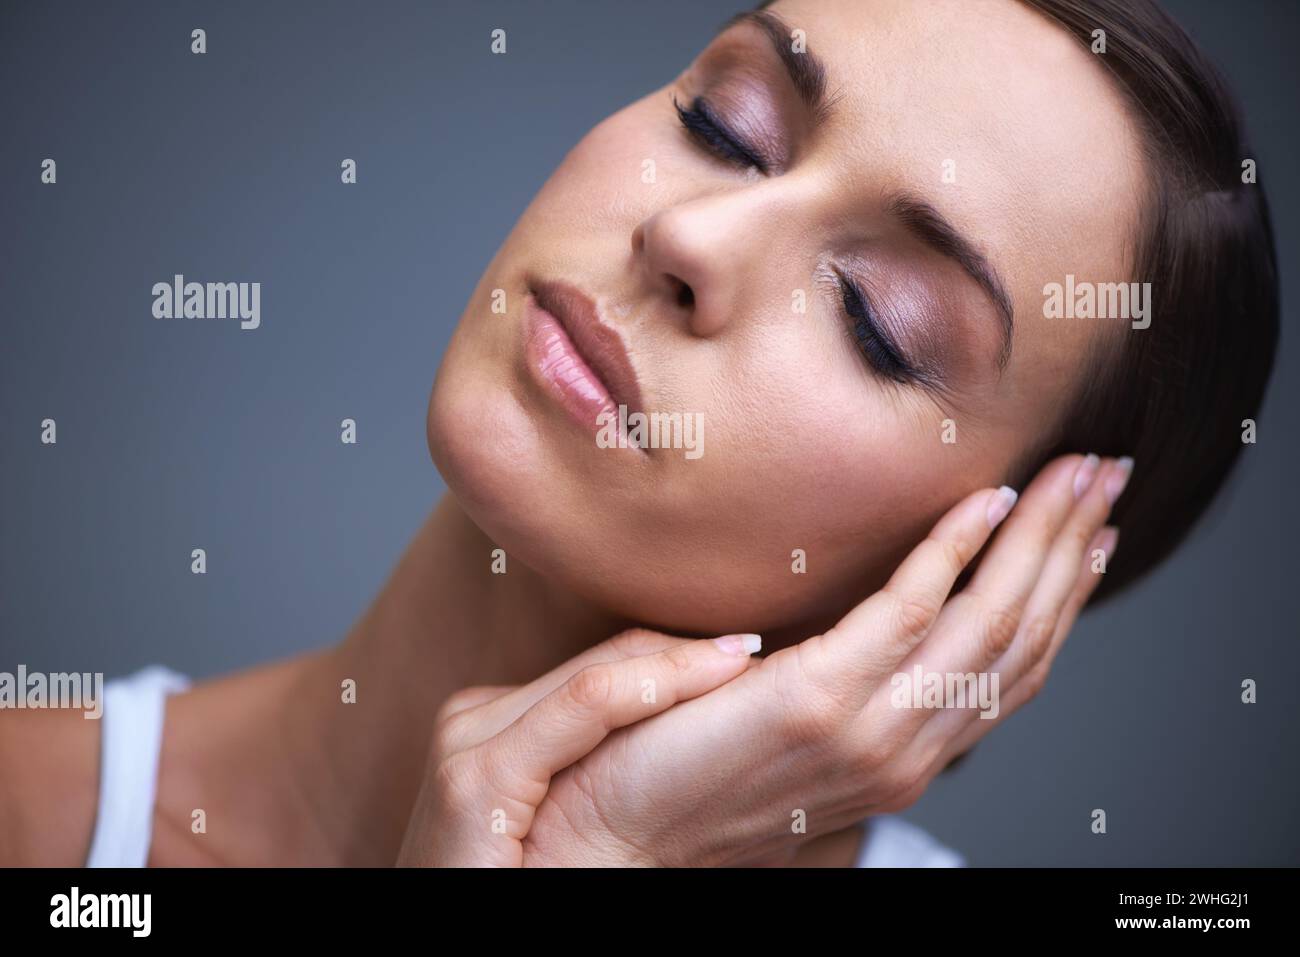 Ruhige Frau, Hautpflege und Beauty Make-up in Kosmetik oder Gesichtsbehandlung auf grauem Studiohintergrund. Gesicht einer weiblichen Person oder eines Models in Relax OR Stockfoto